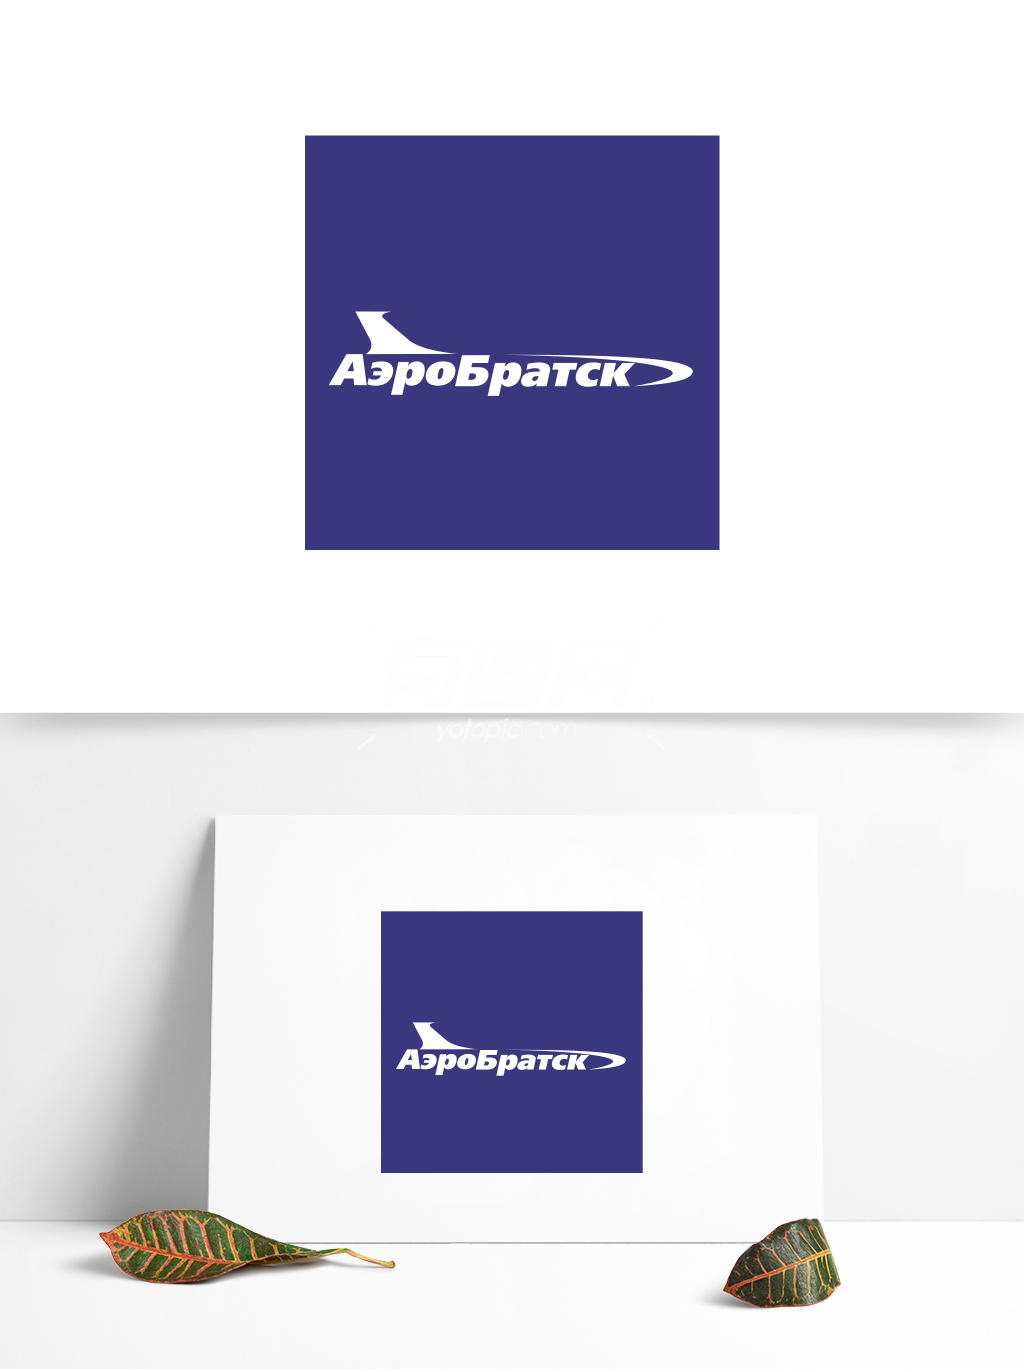 全球航空业标志设计 (10)